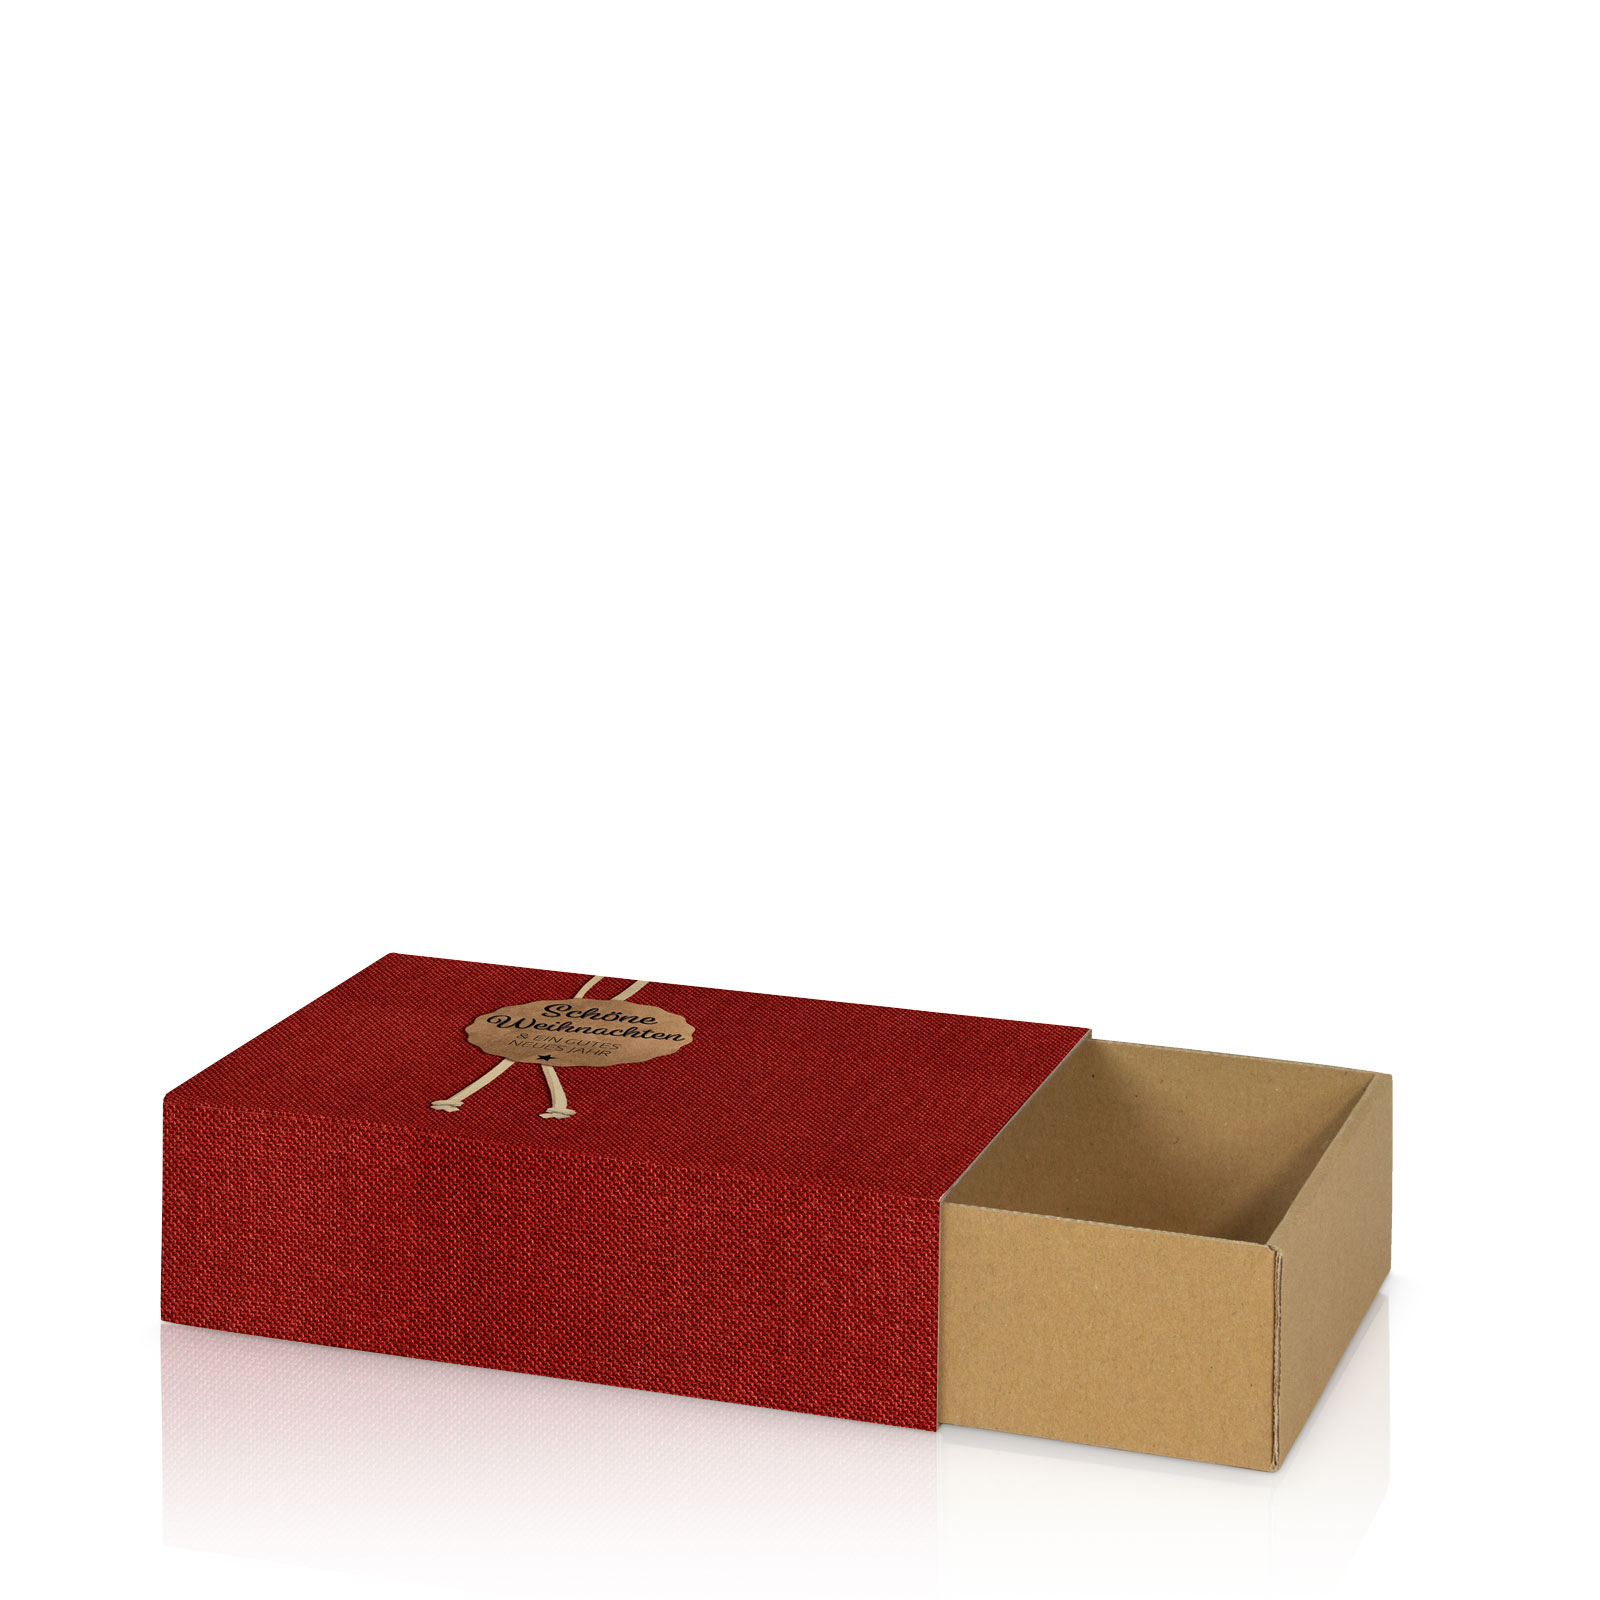 Geschenkbox rot "Weihnachten" Schuber Größe -1- 180x130x50mm